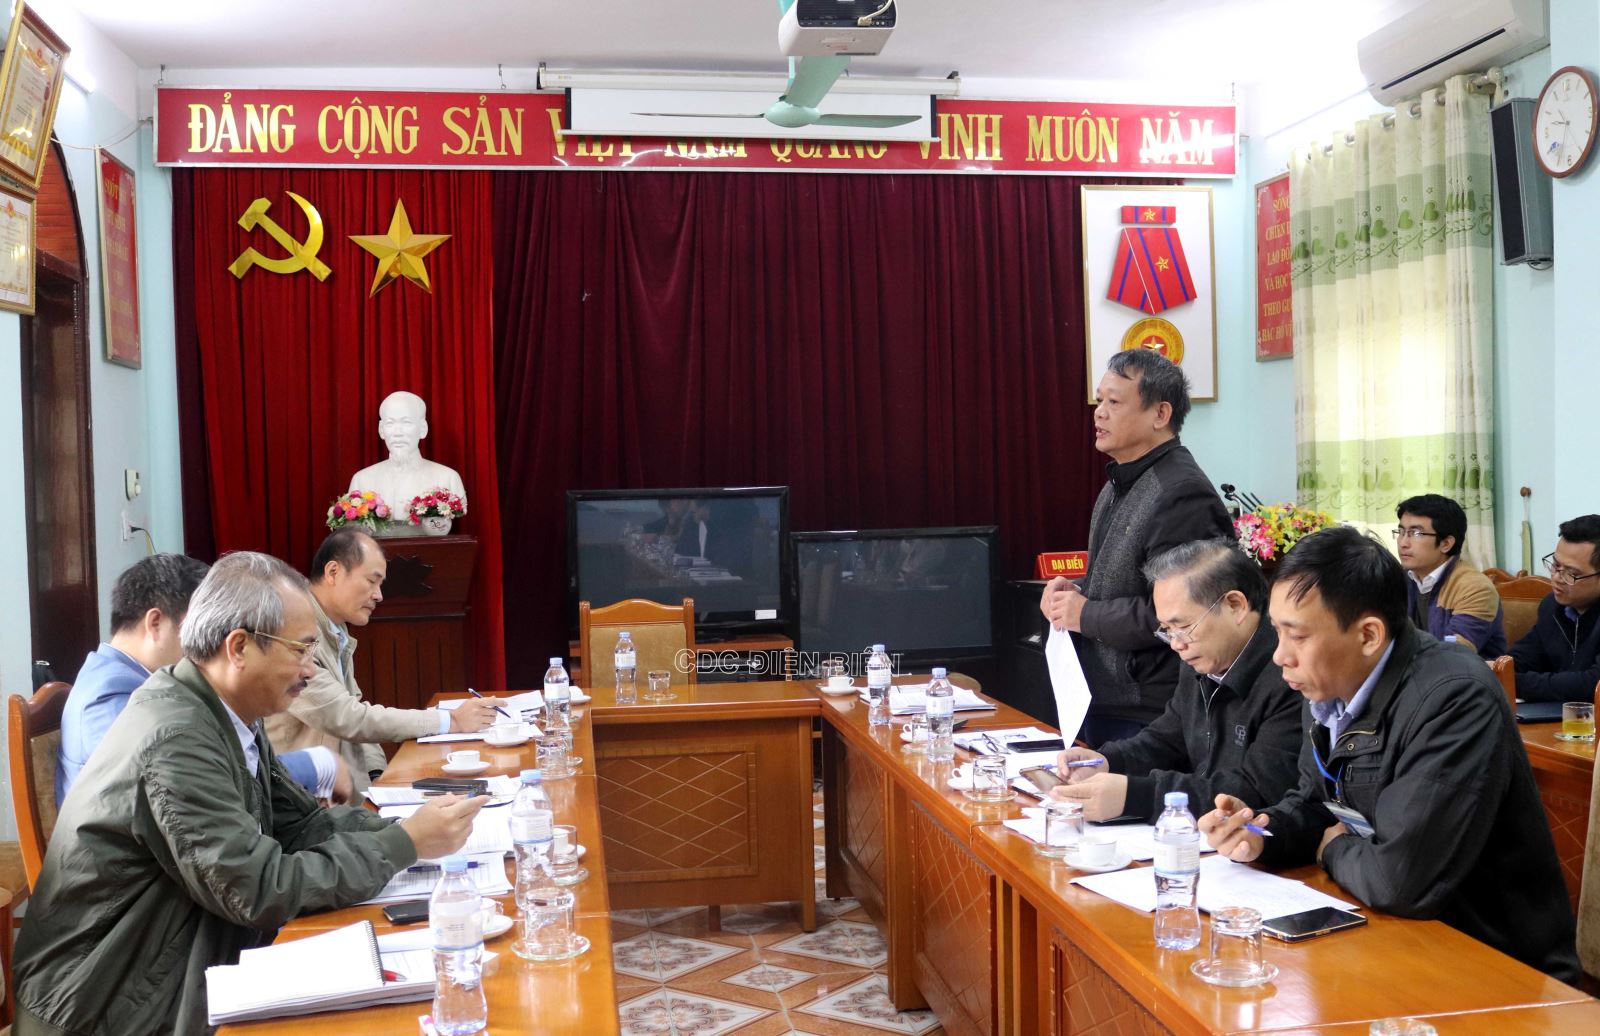 Đồng chí Nguyễn Châu Sơn, Trưởng phòng Nghiệp vụ Y - Dược Sở Y tế phát biểu ý kiến tại buổi làm việc với Đoàn